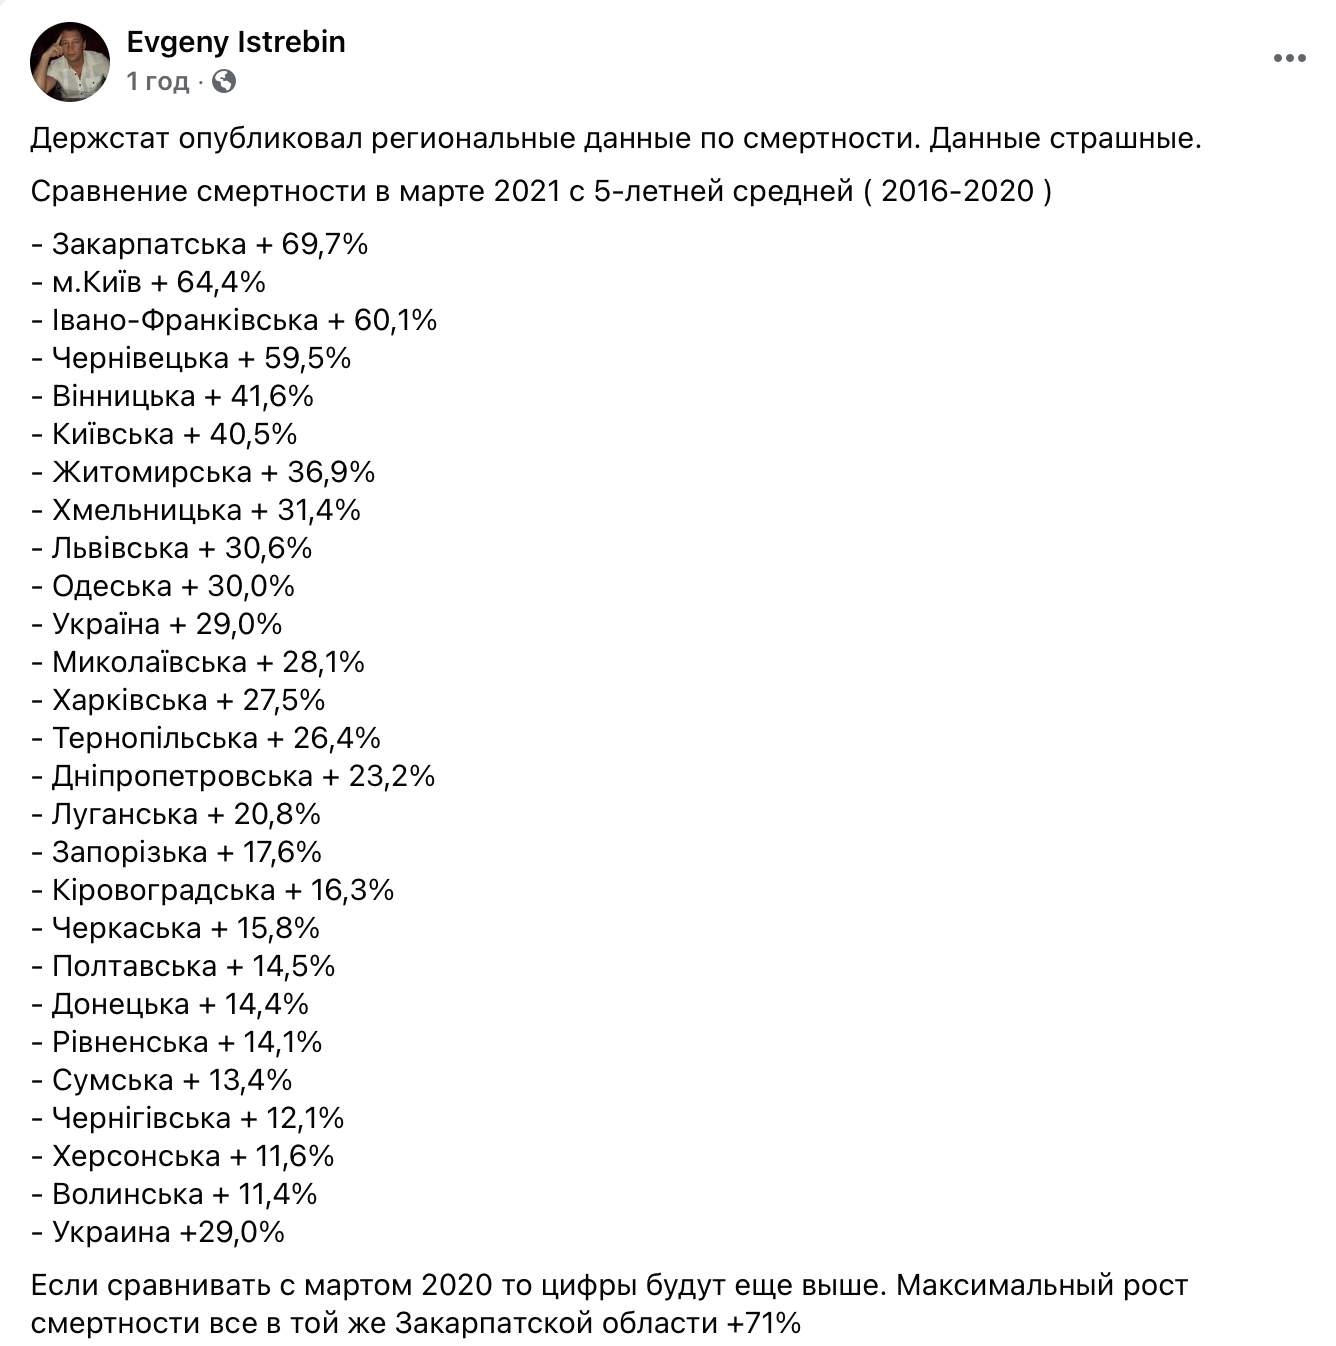 Смертность в Украине в марте-2020 выше на 29% по сравнению со средней за 2016-2020 годы. Скриншот